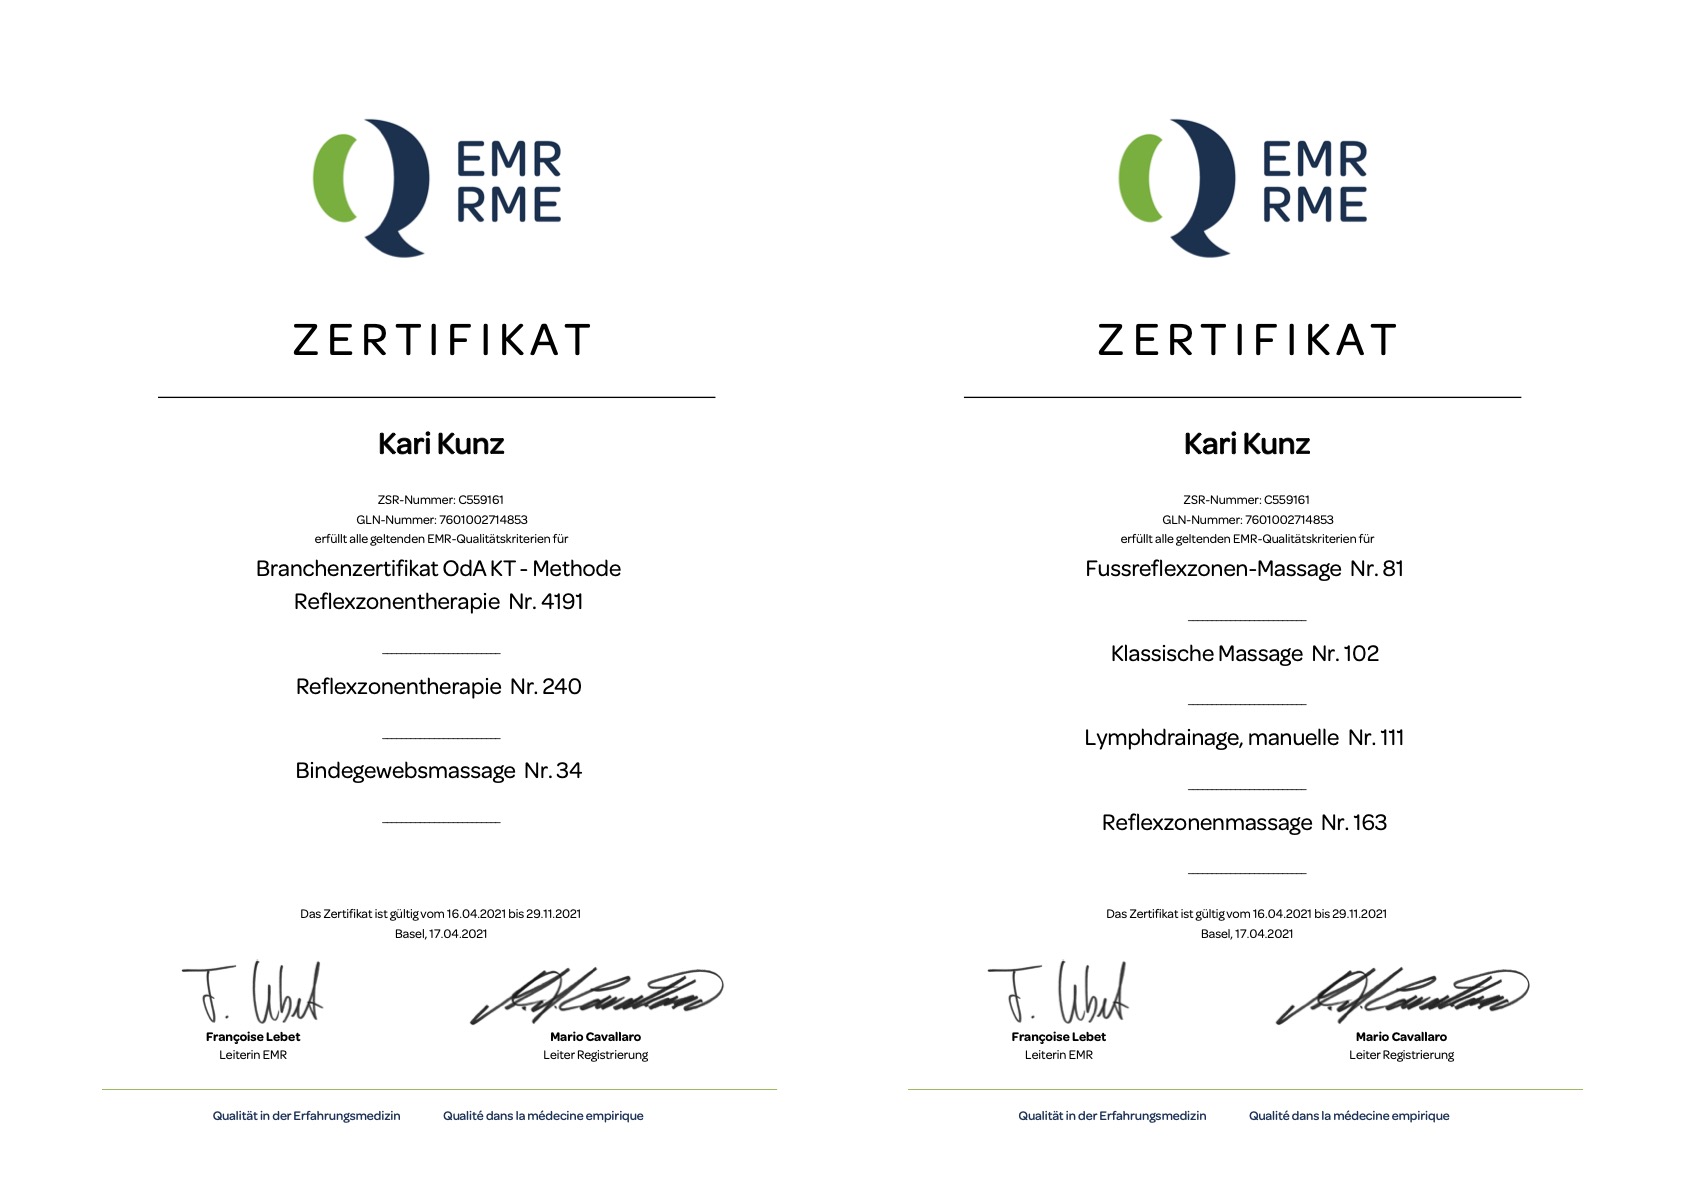 EMR Zertifikat 2019